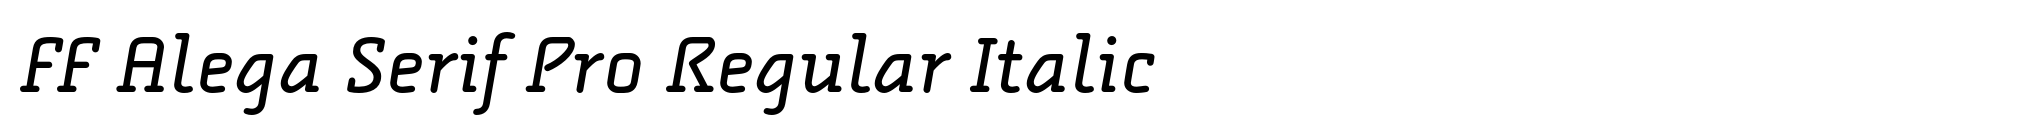 FF Alega Serif Pro Regular Italic image